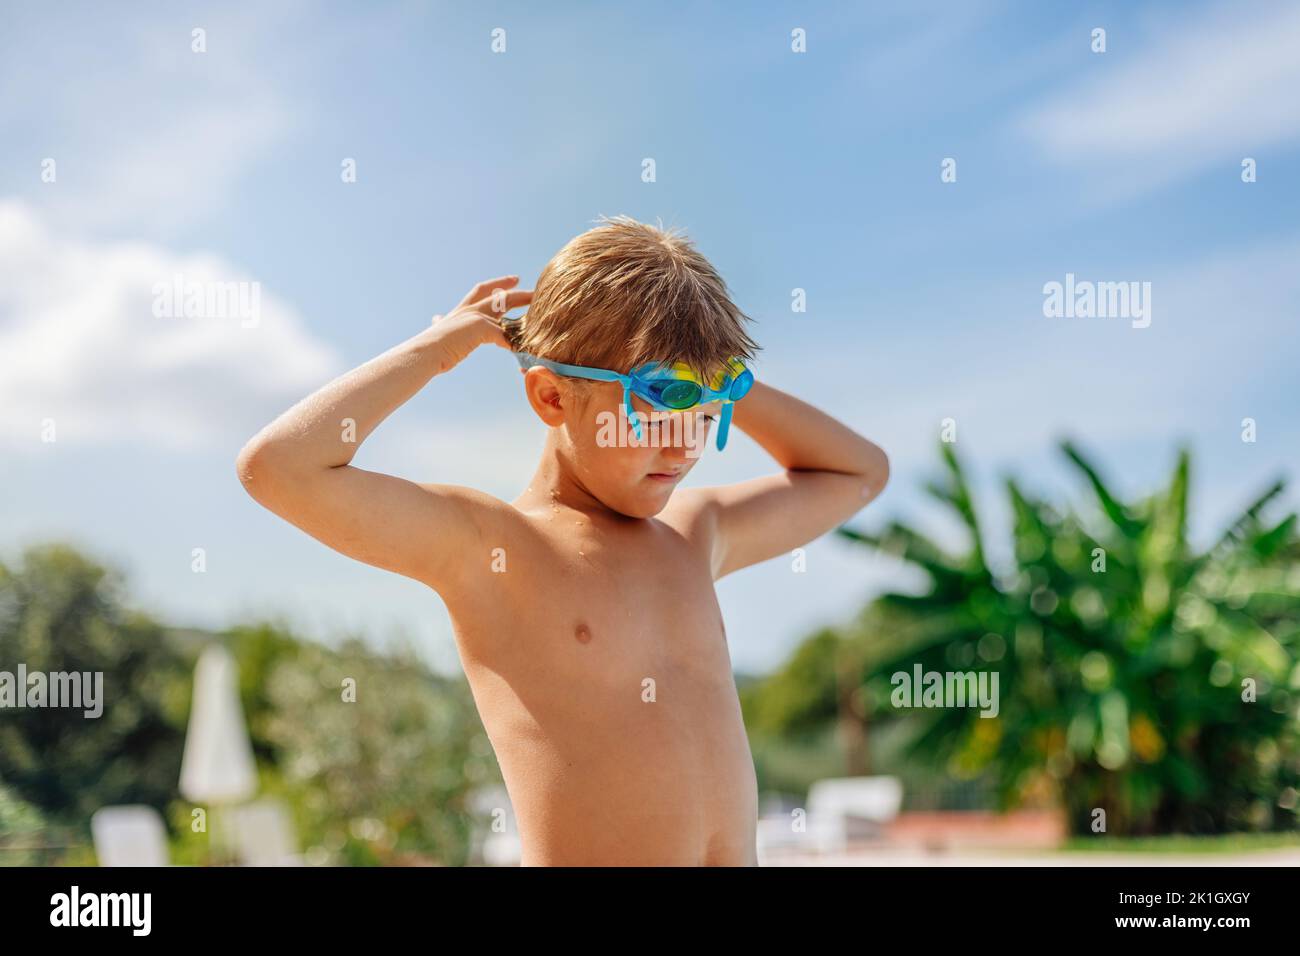 il ragazzo di 8 anni si mette gli occhiali da nuoto e si prepara a nuotare nella piscina dell'hotel. Foto Stock